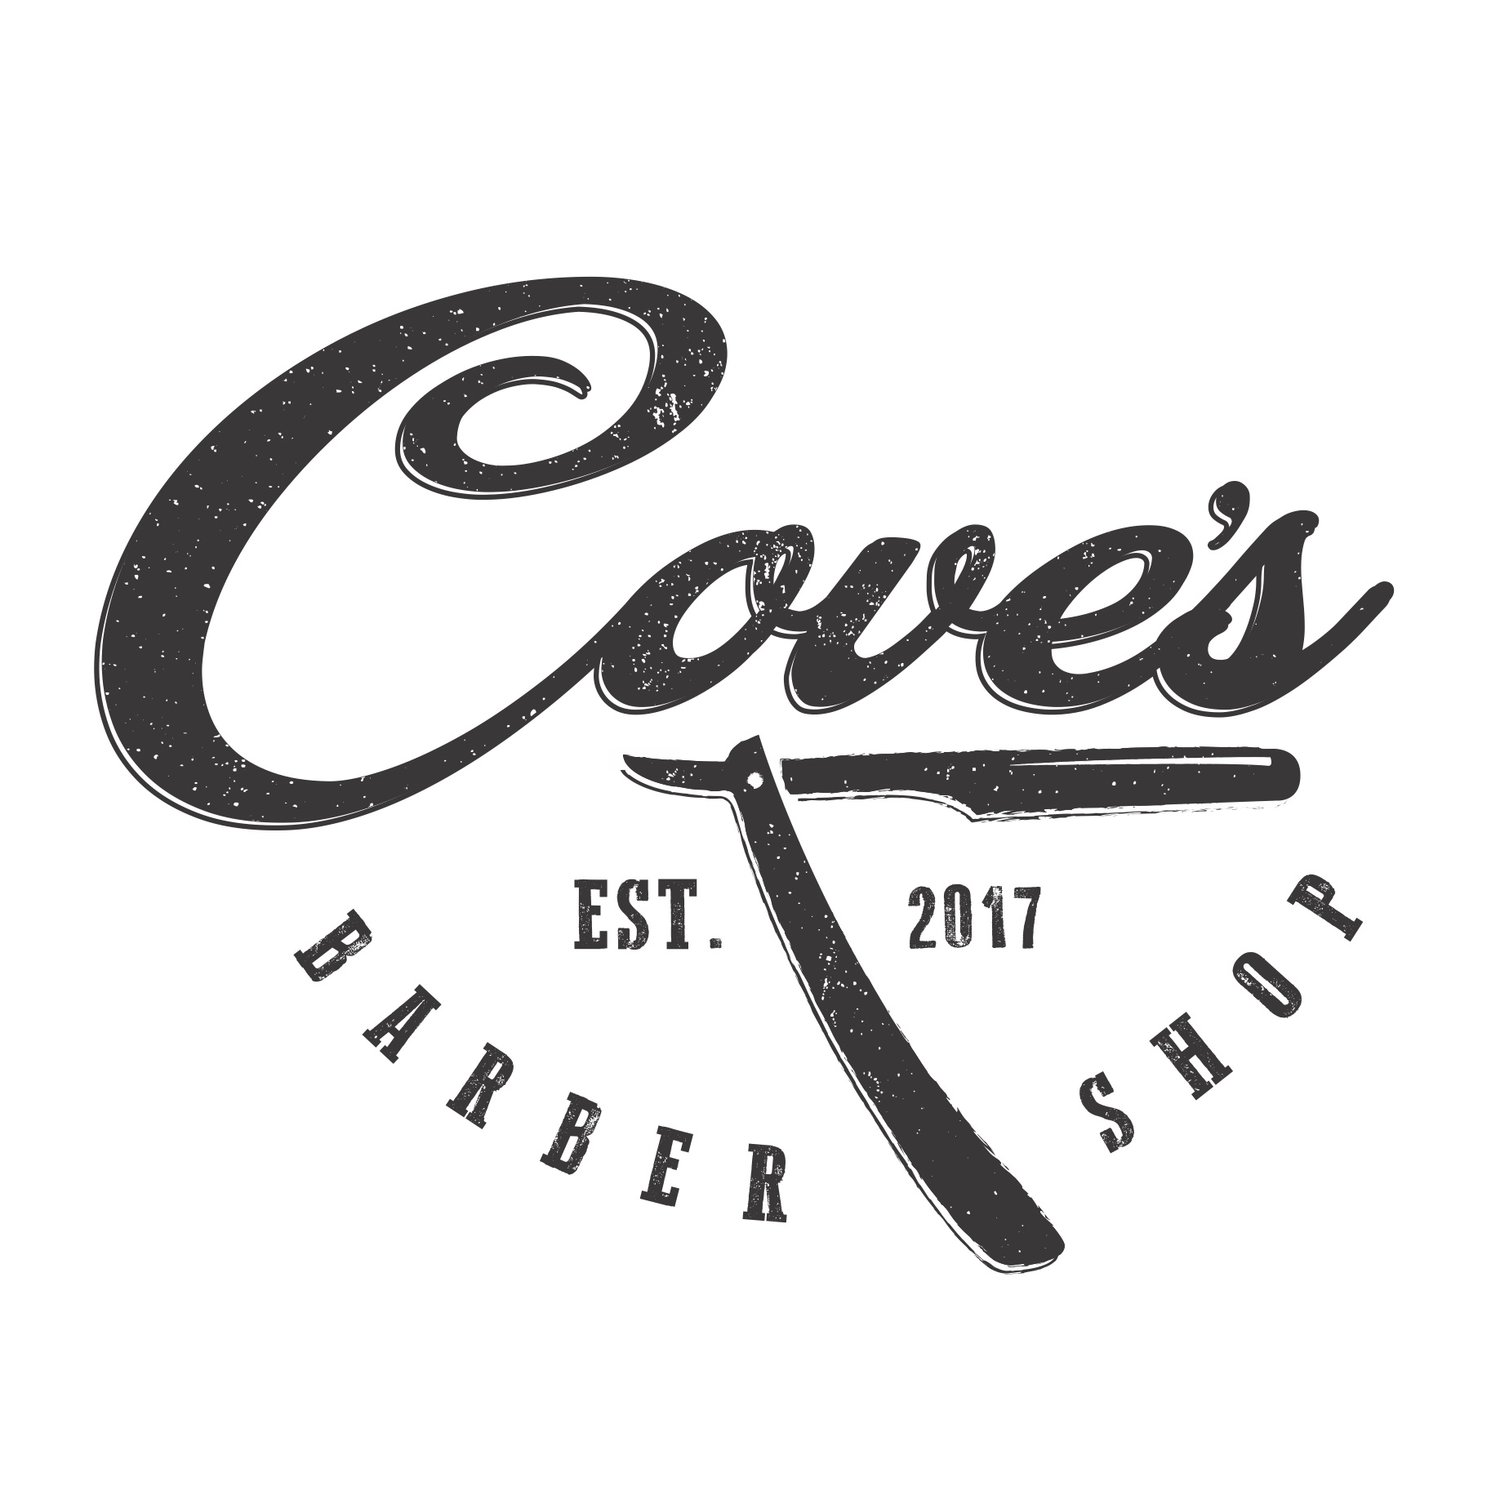 Cove's Barber Shop